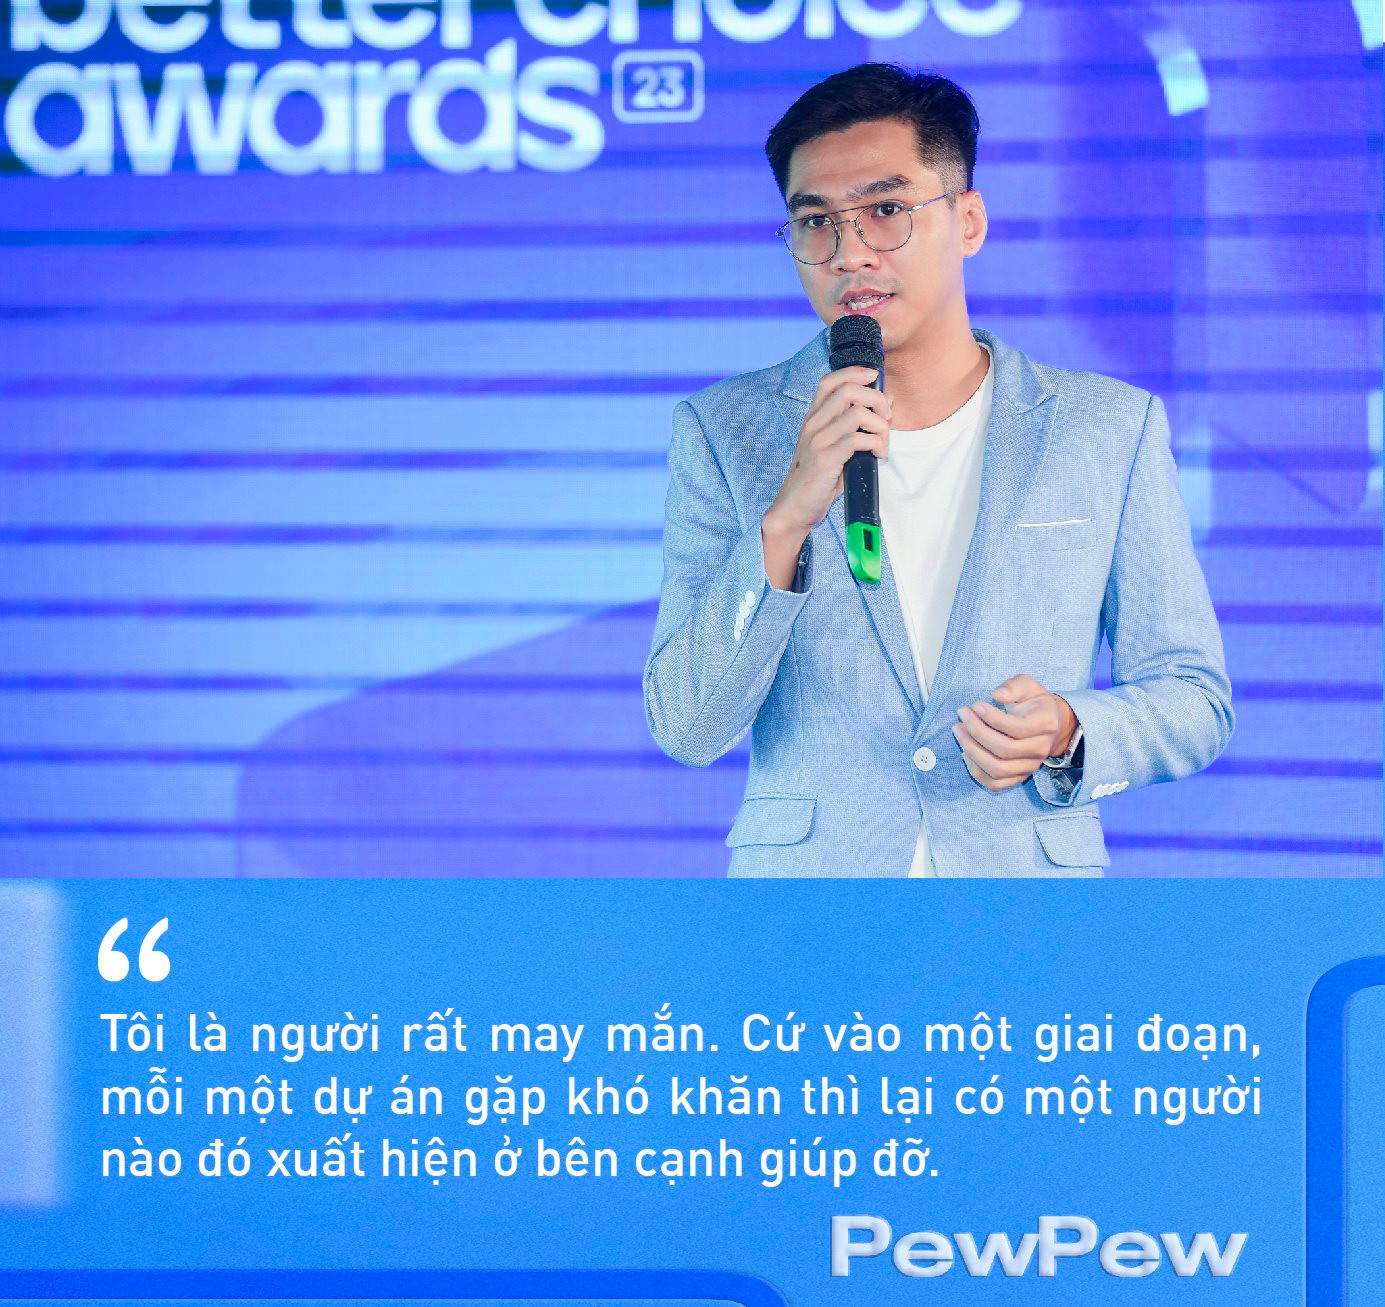 PewPew tiết lộ lý do khởi nghiệp siêu dị trên TikTok với giấy vệ sinh, livestream bằng kỷ vật tình yêu, và chuyện ‘chưa có nhãn hàng nào phải buồn’ - Ảnh 3.